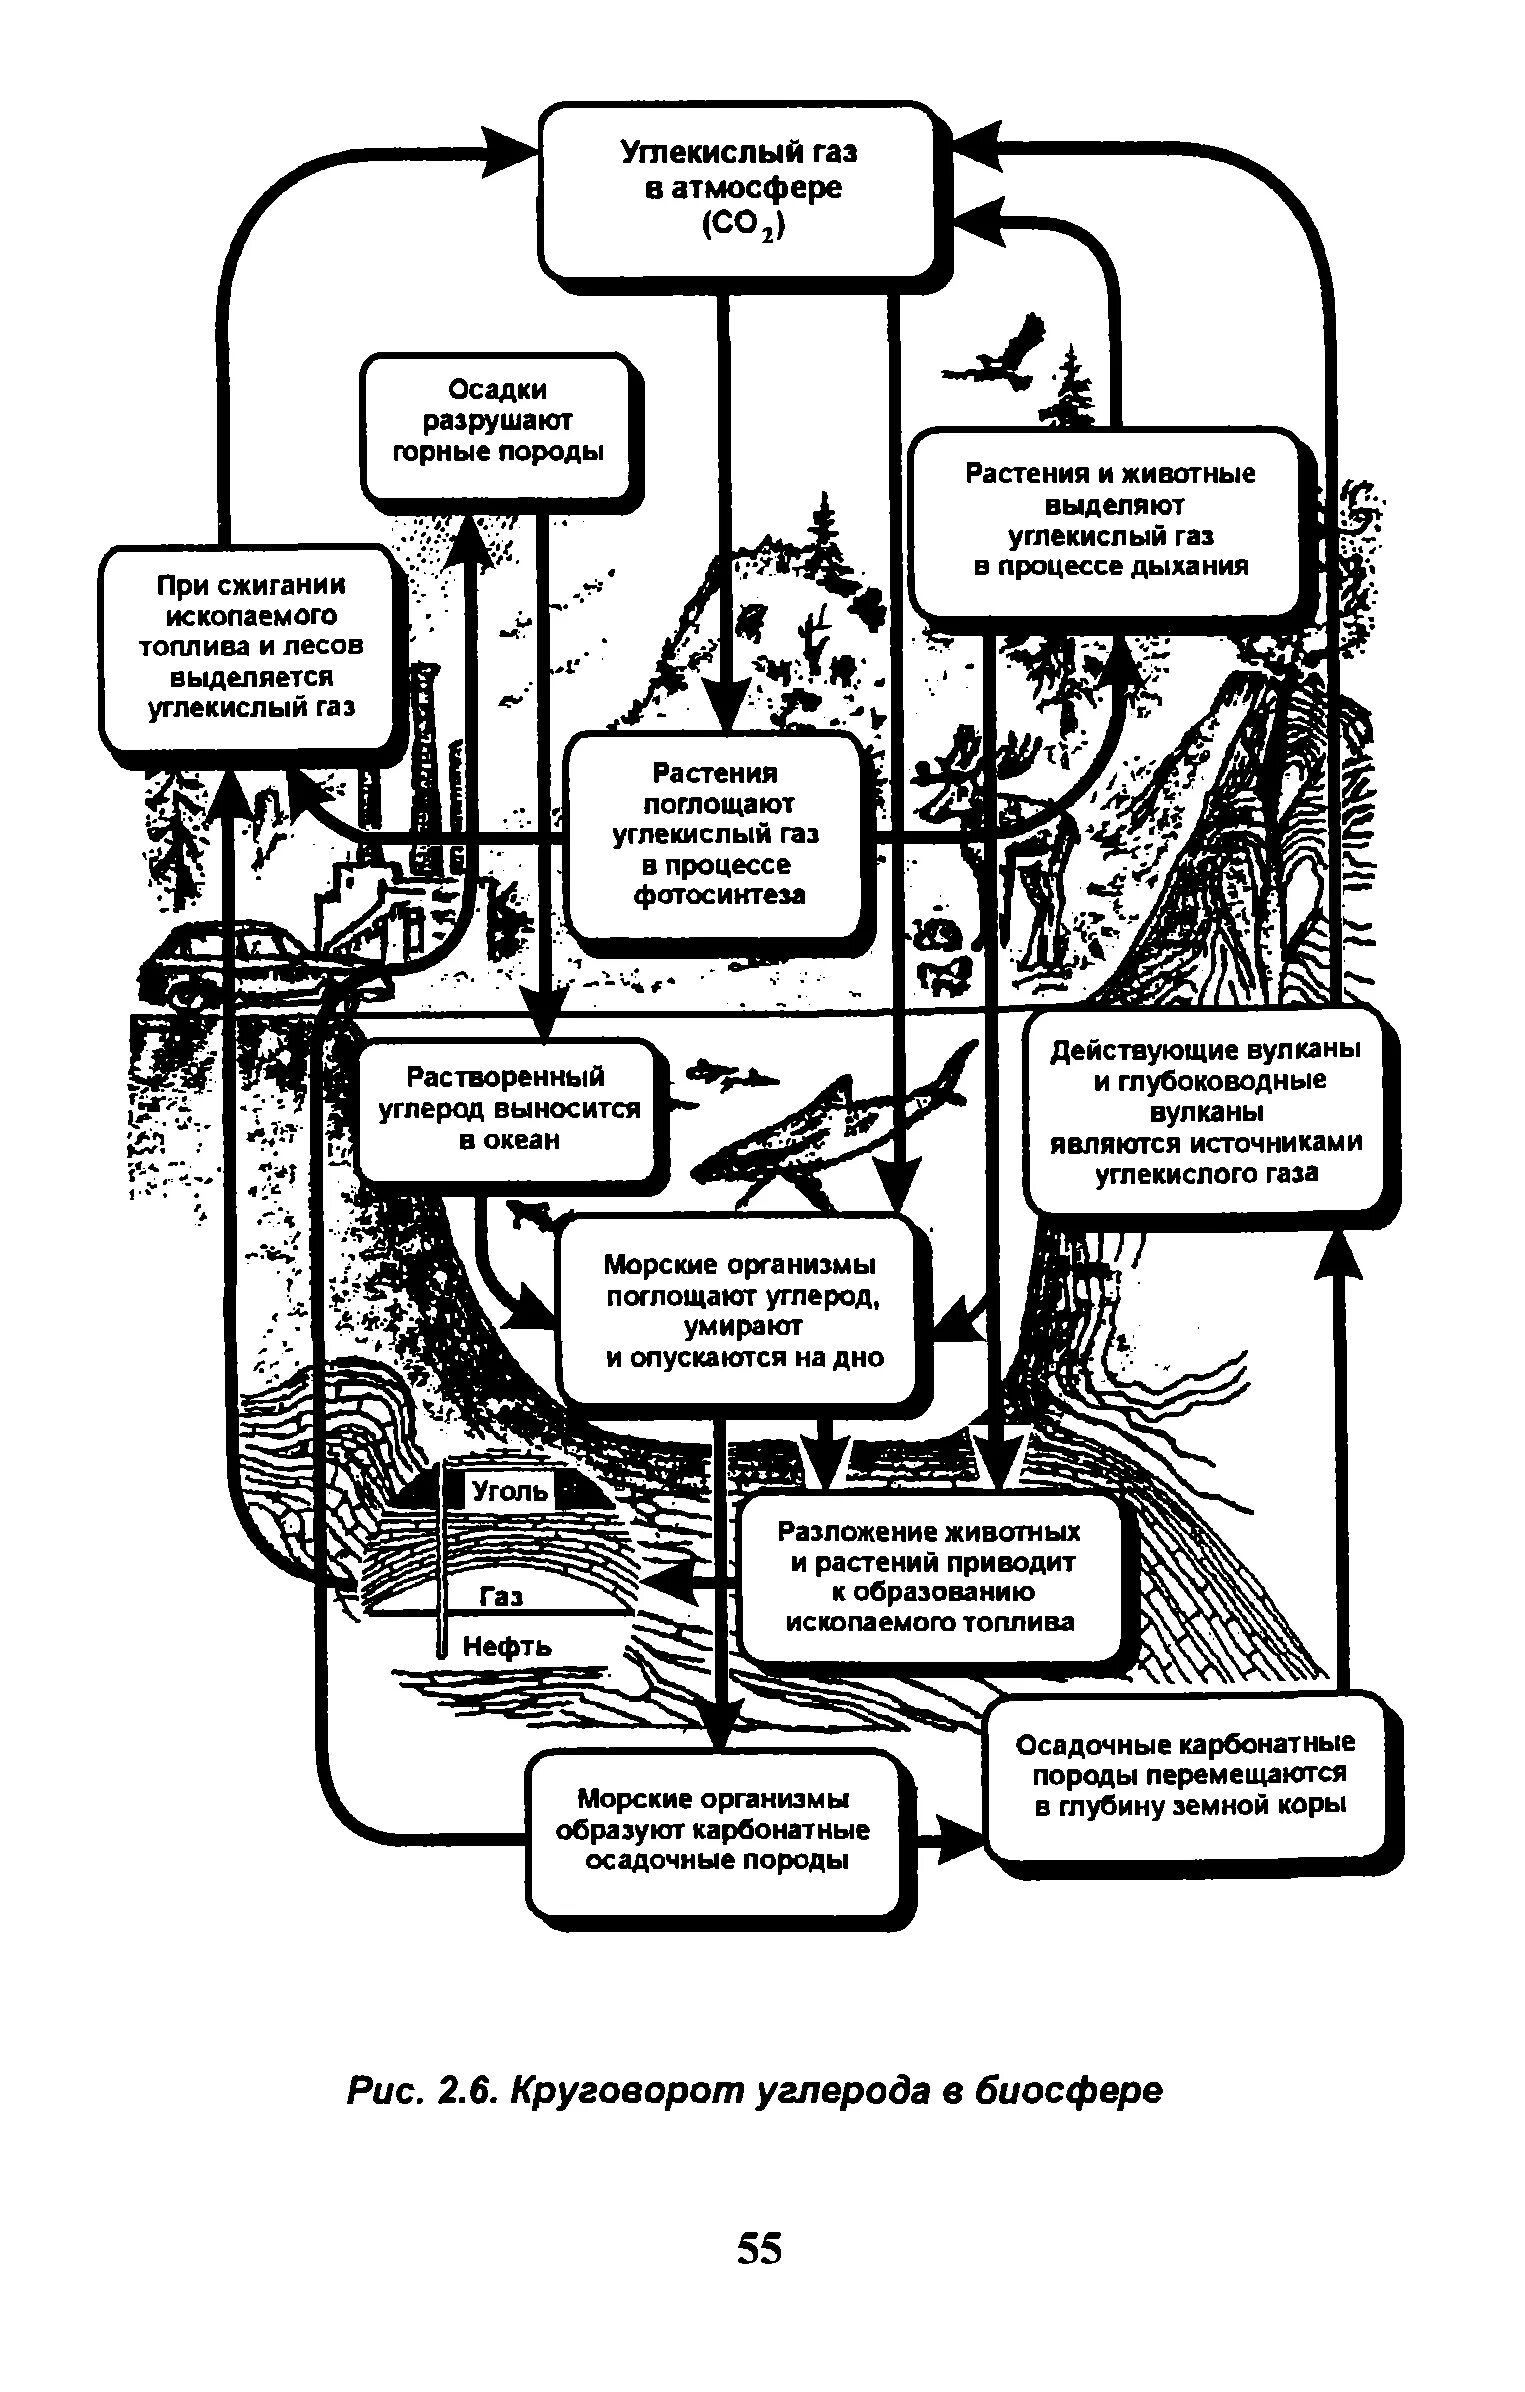 Упрощенная схема круговорота углерода в биосфере. Схема биогеохимического цикла углерода в биосфере. Круговорот углерода в биосфере. Круговорот углерода в биосфере схема. Экосистемы круговорот углерода